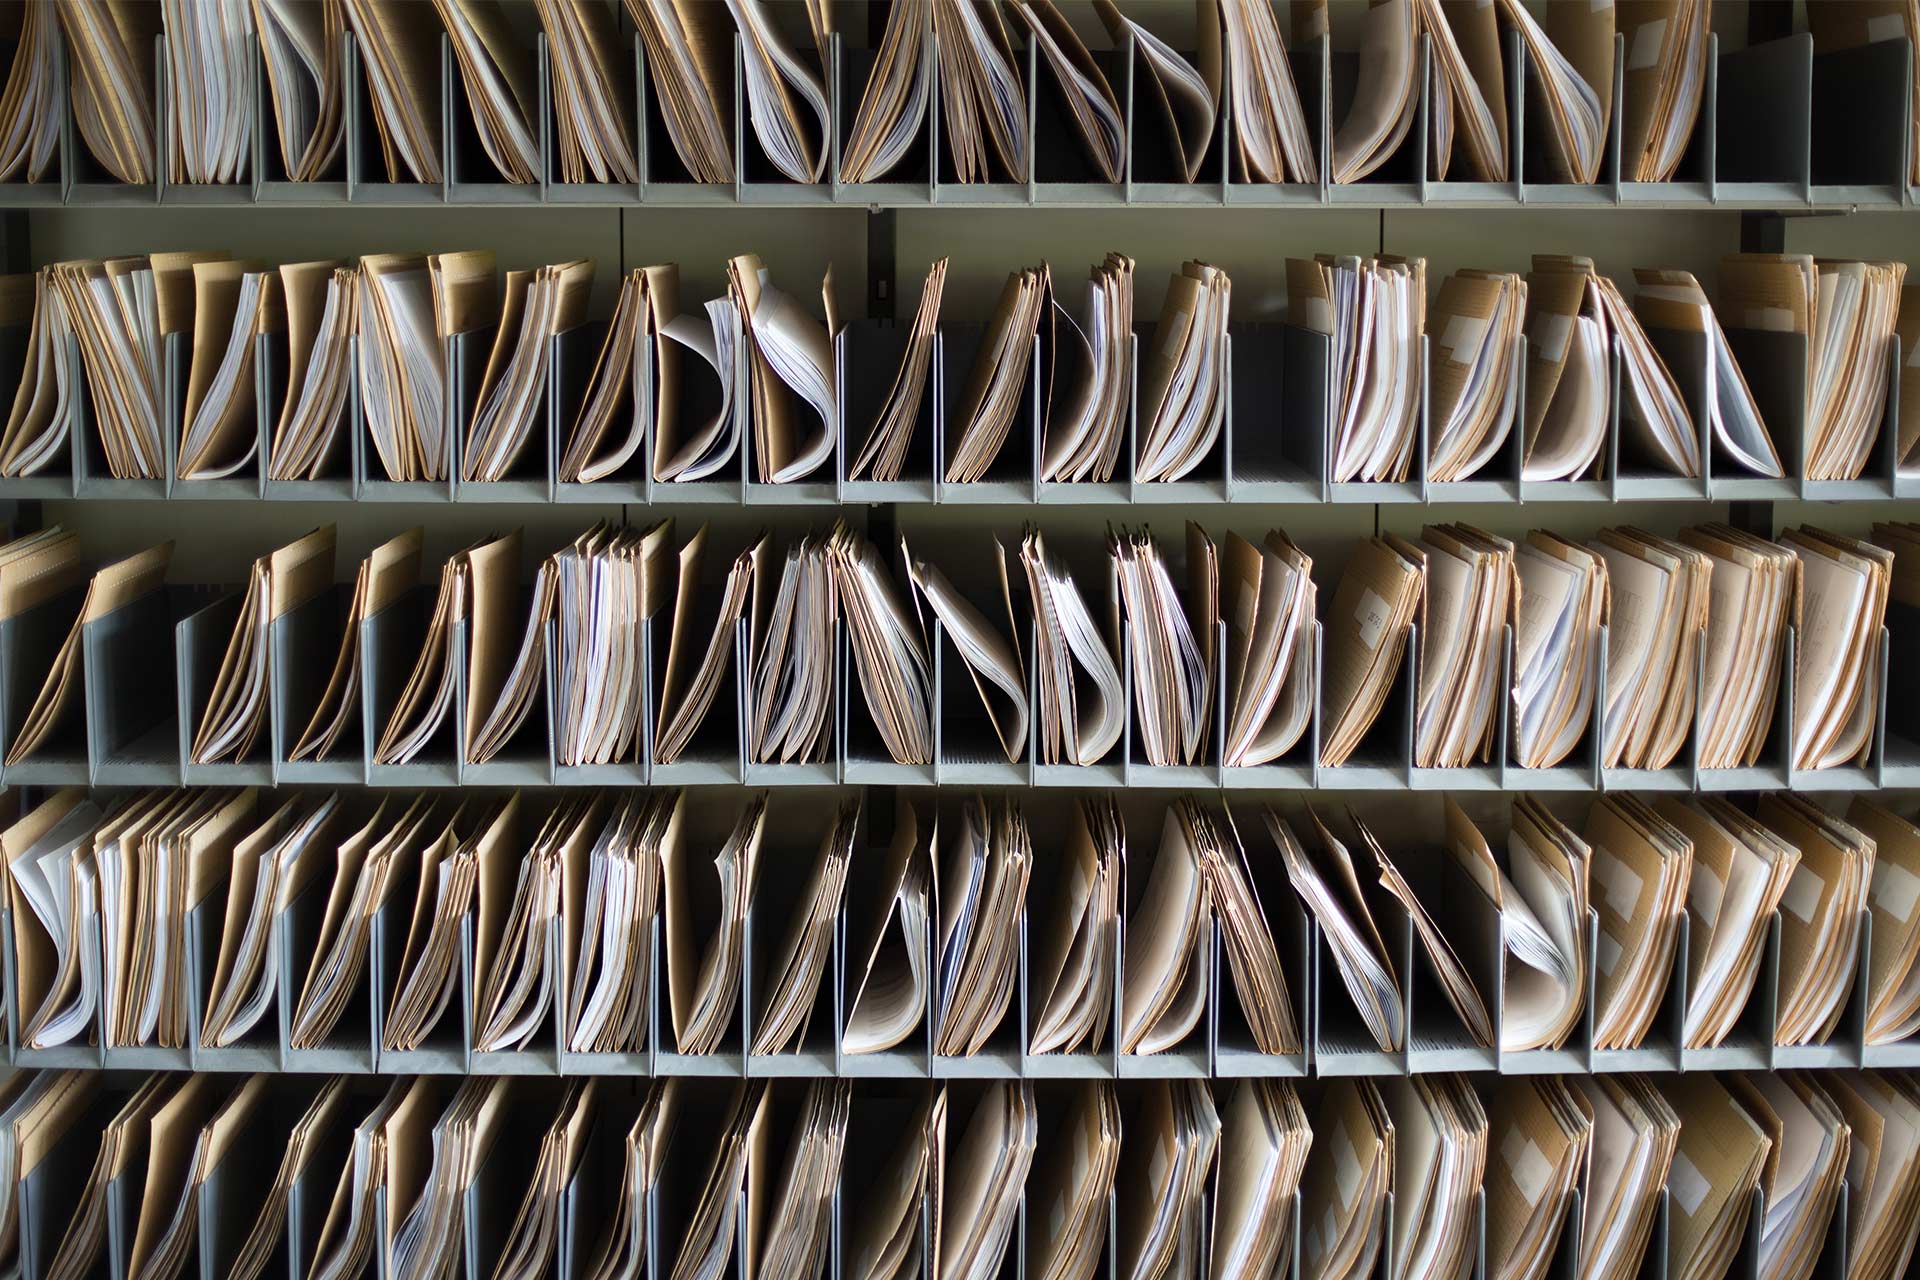 Rzędy papierowych dokumentów w teczkach posortowanych w przegródkach.